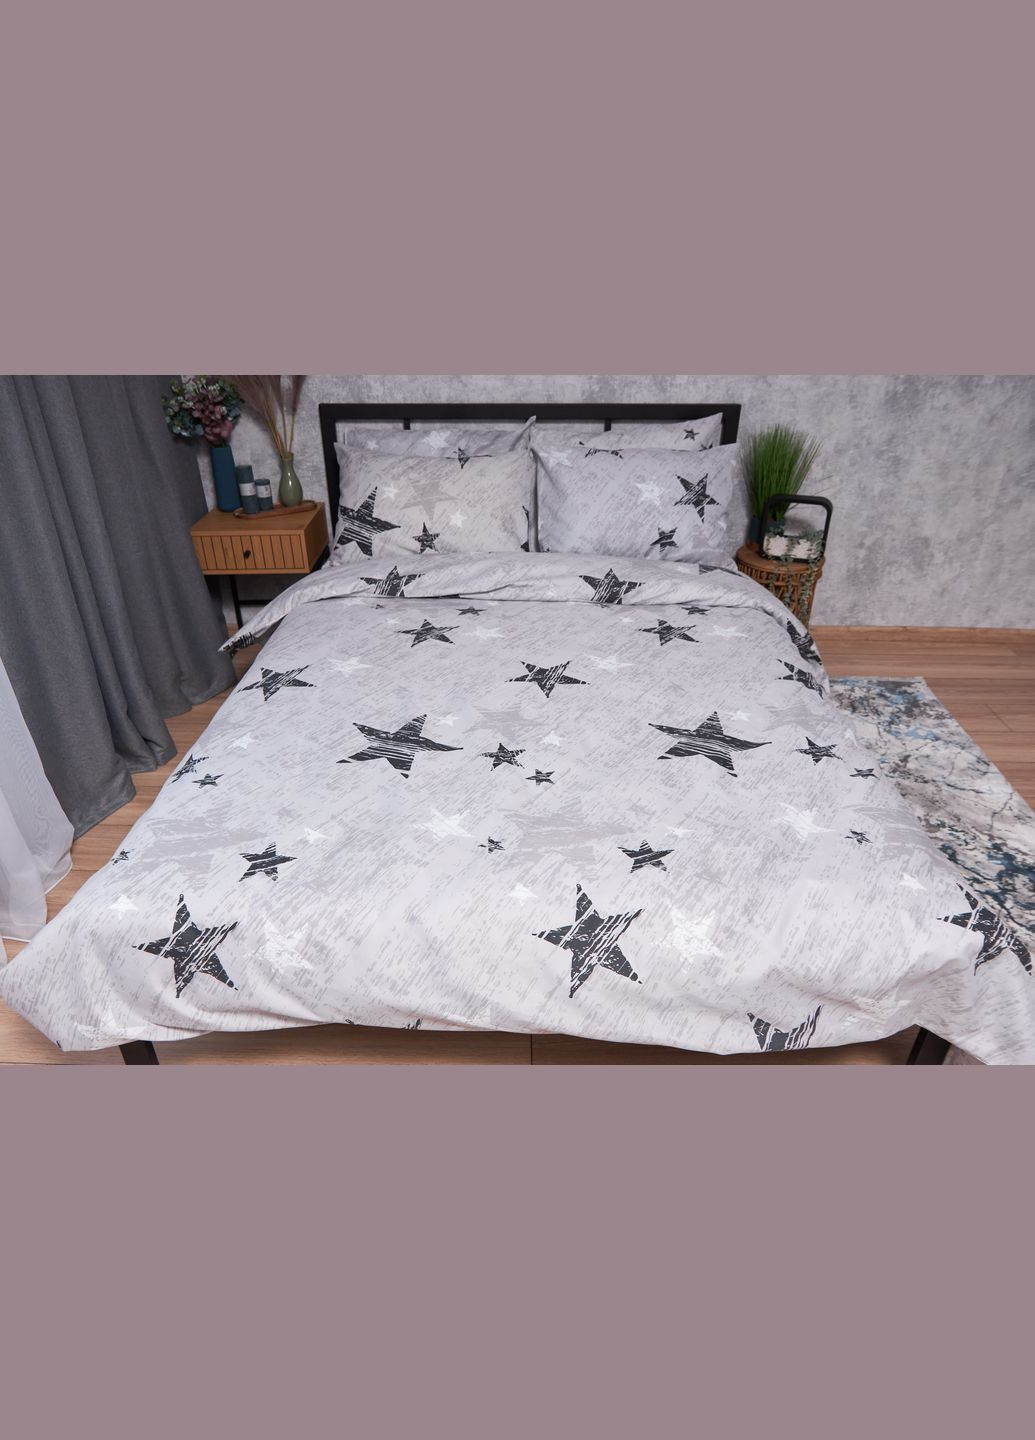 Комплект постельного белья Микросатин Premium «» евро 200х220 наволочки 4х70х70 (MS-820002382) Moon&Star starlight (286762252)